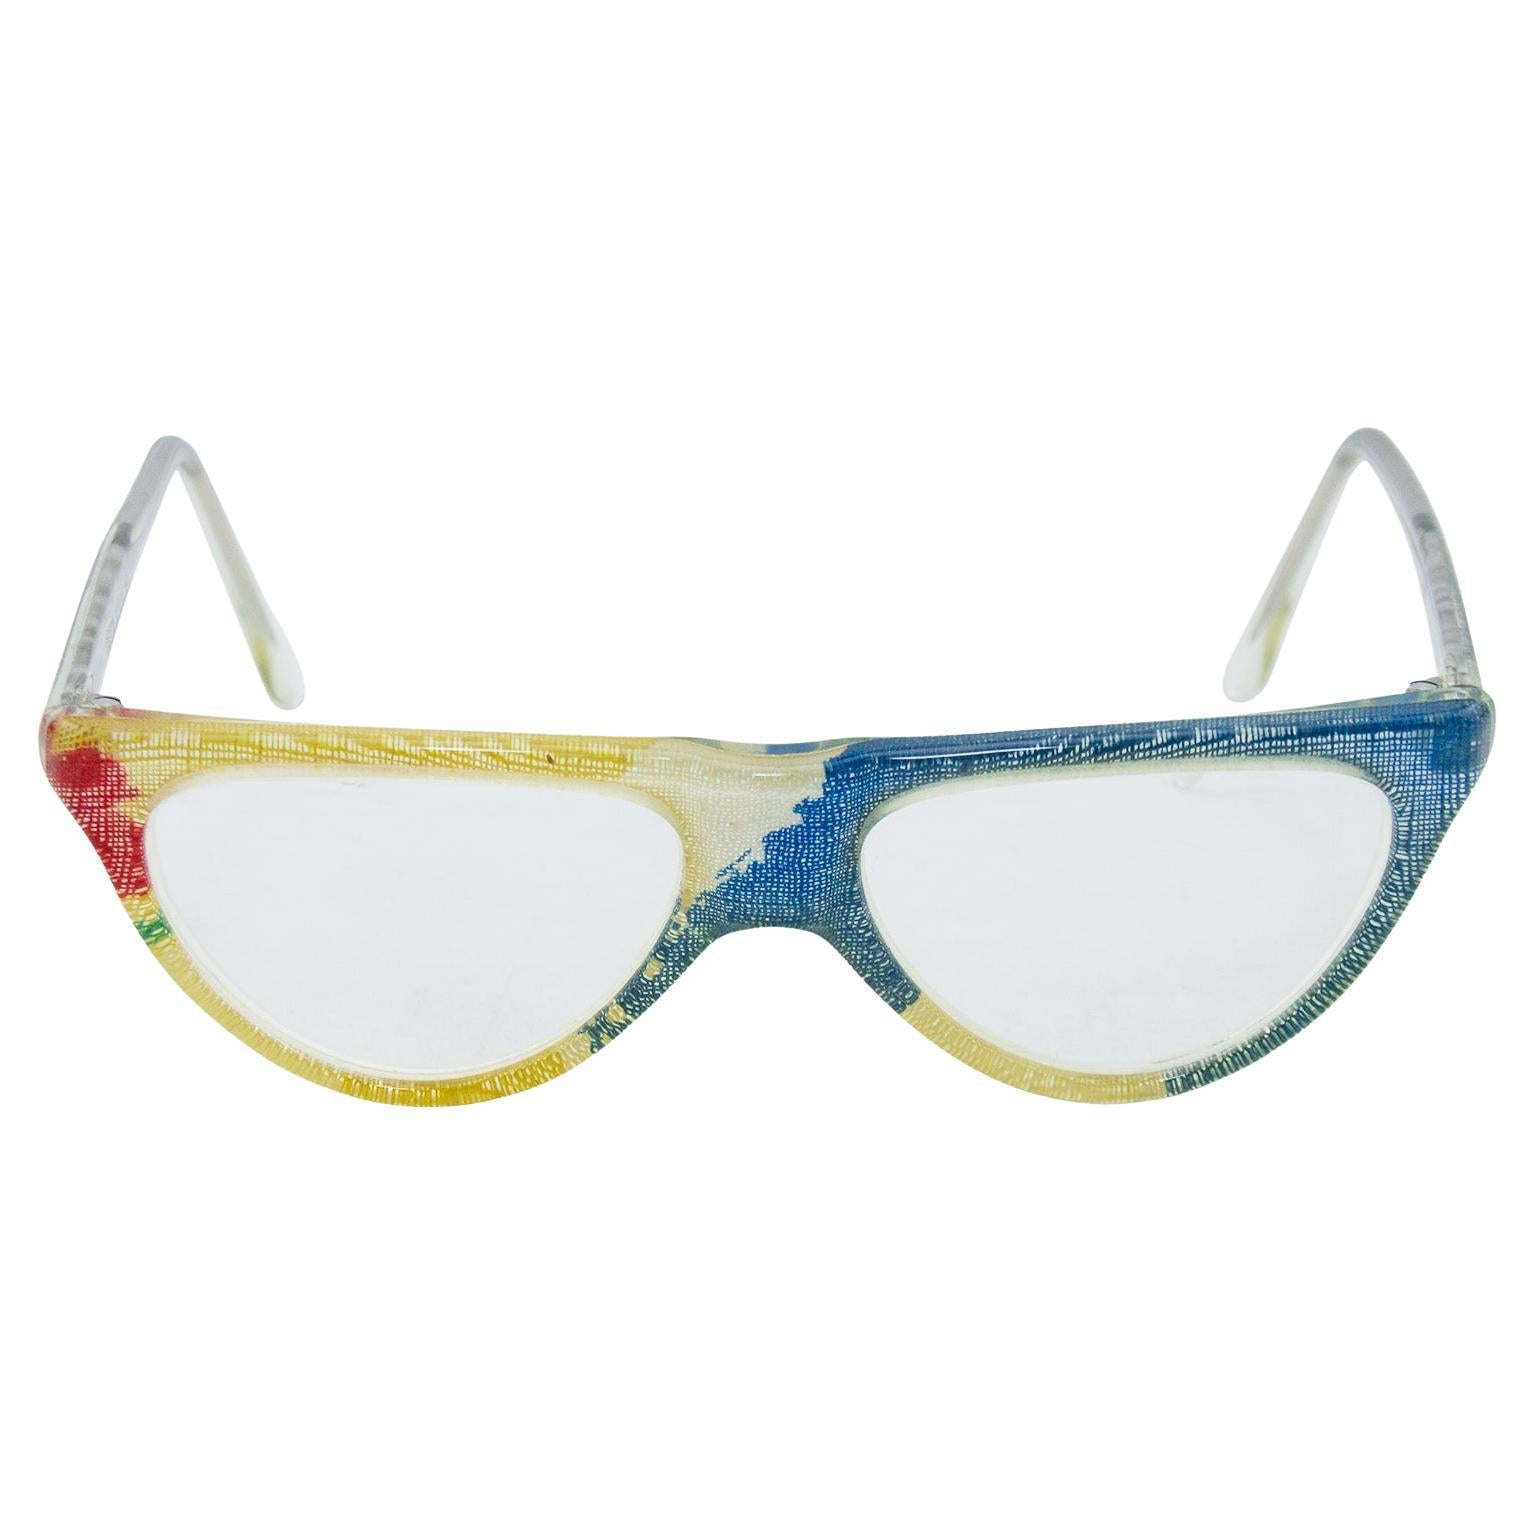 Chanel Sunglasses Eyeglasses 5376-b 1598/k4 Blue Frame Gradient